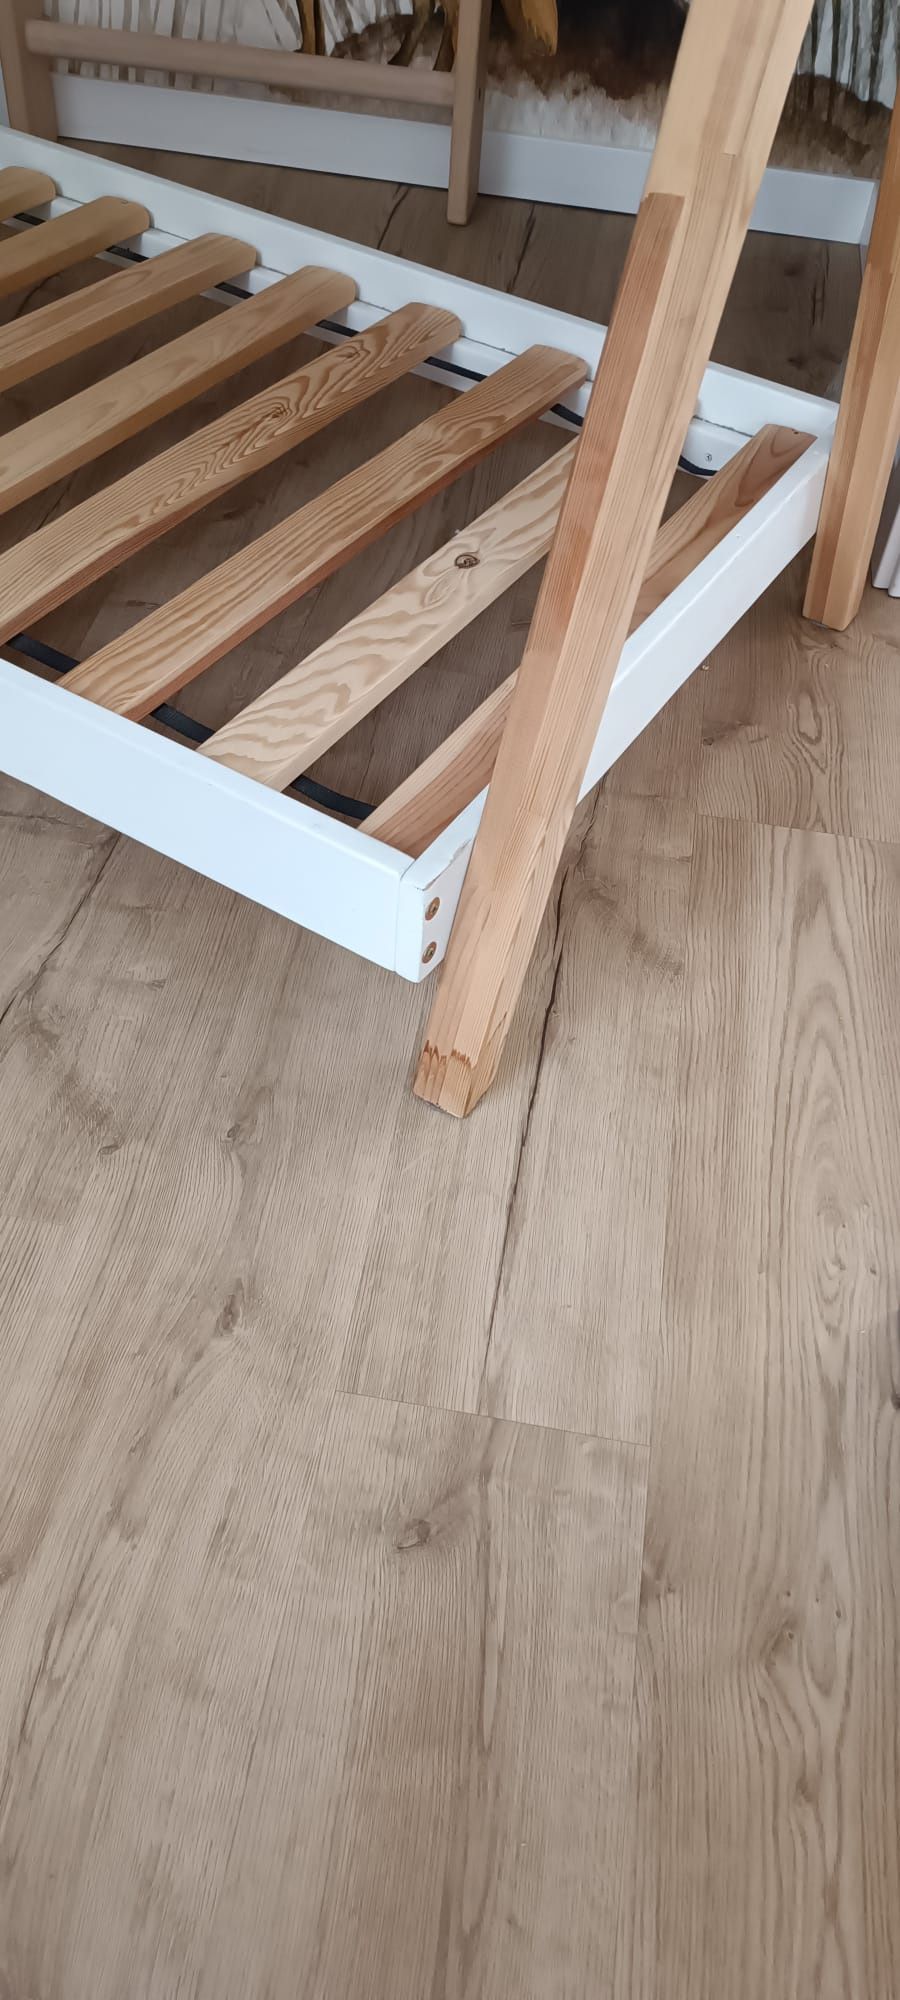 Drewniane łóżko 160/70 TIPI firmy luletto